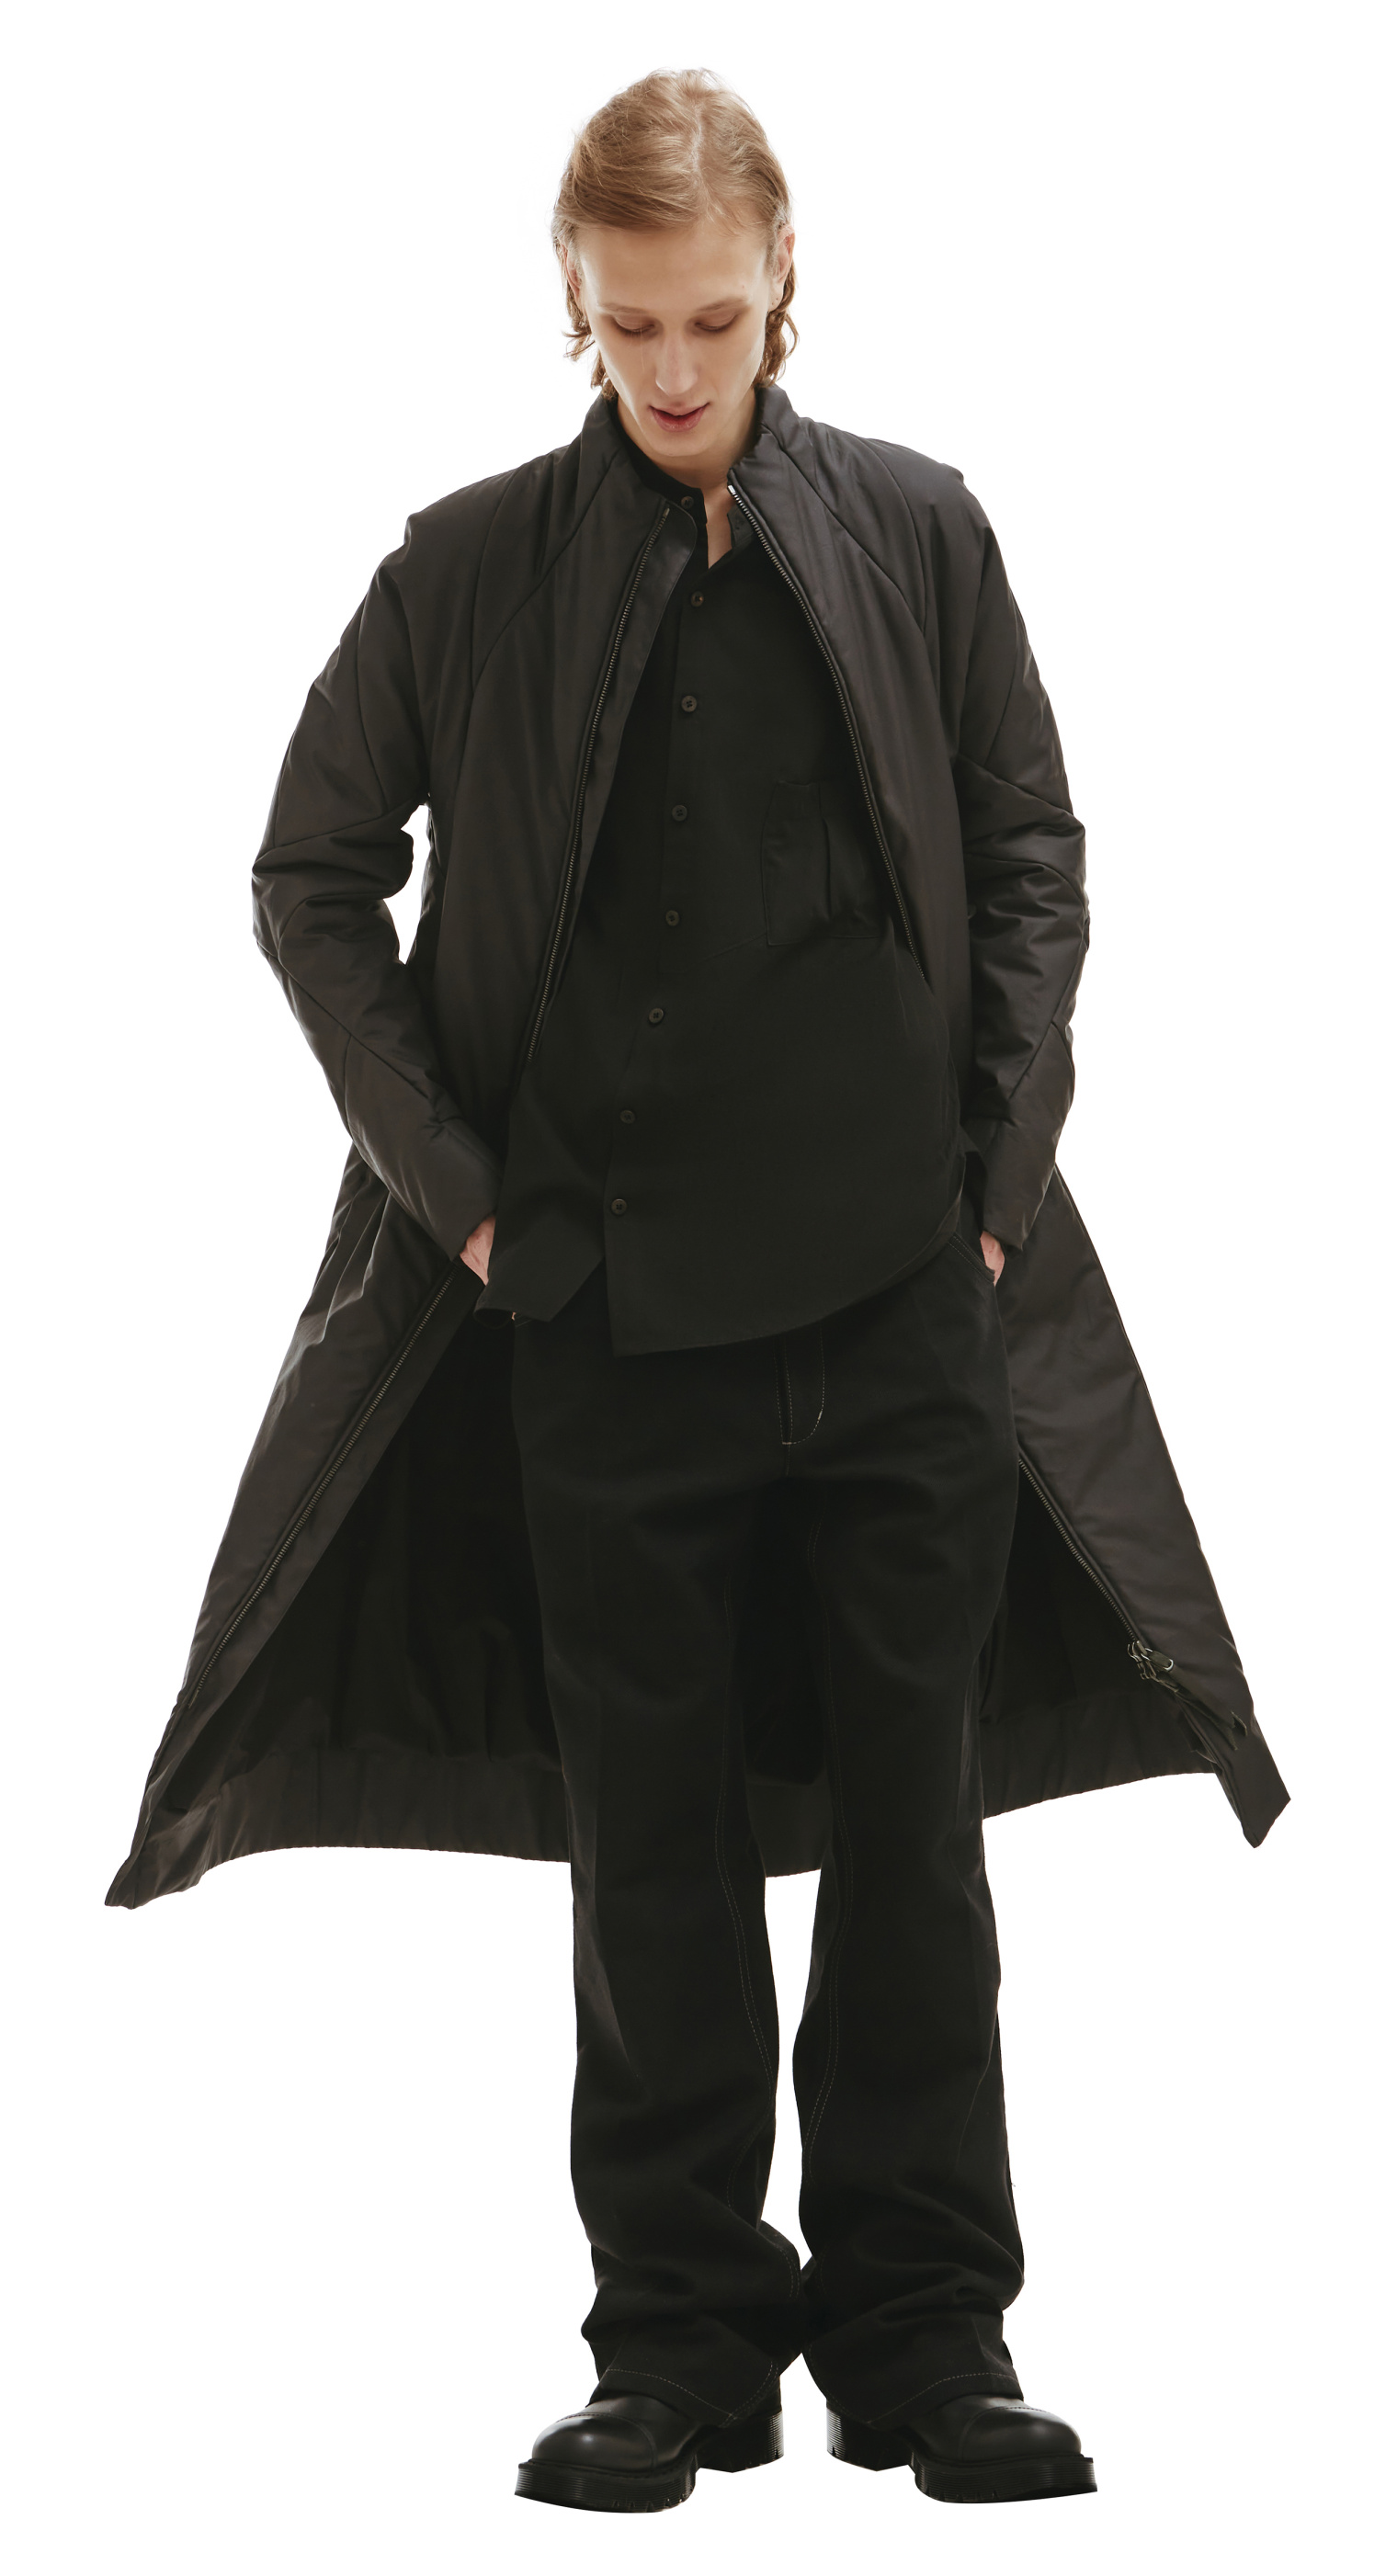 Leon Emanuel Blanck Black Padded Zip-Up Parka Coat